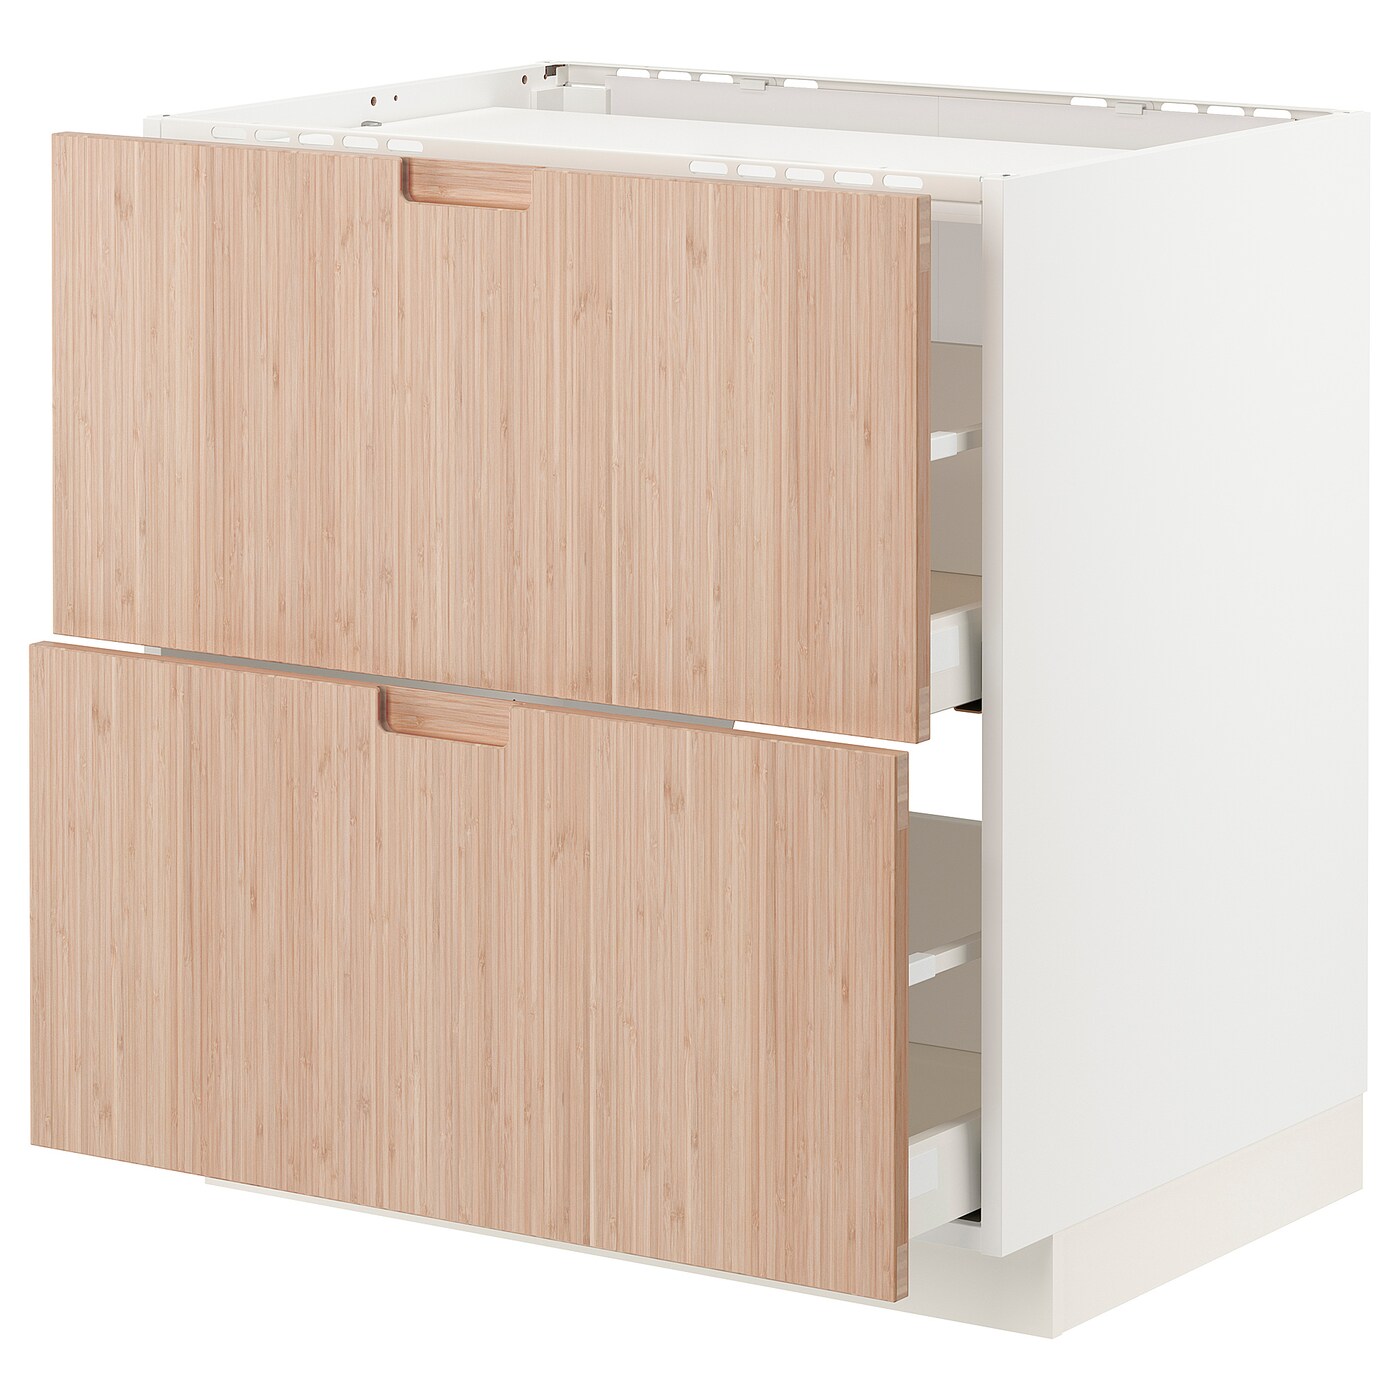 Напольный кухонный шкаф  - IKEA METOD MAXIMERA, 88x62x80см, белый/светлый бамбук, МЕТОД МАКСИМЕРА ИКЕА